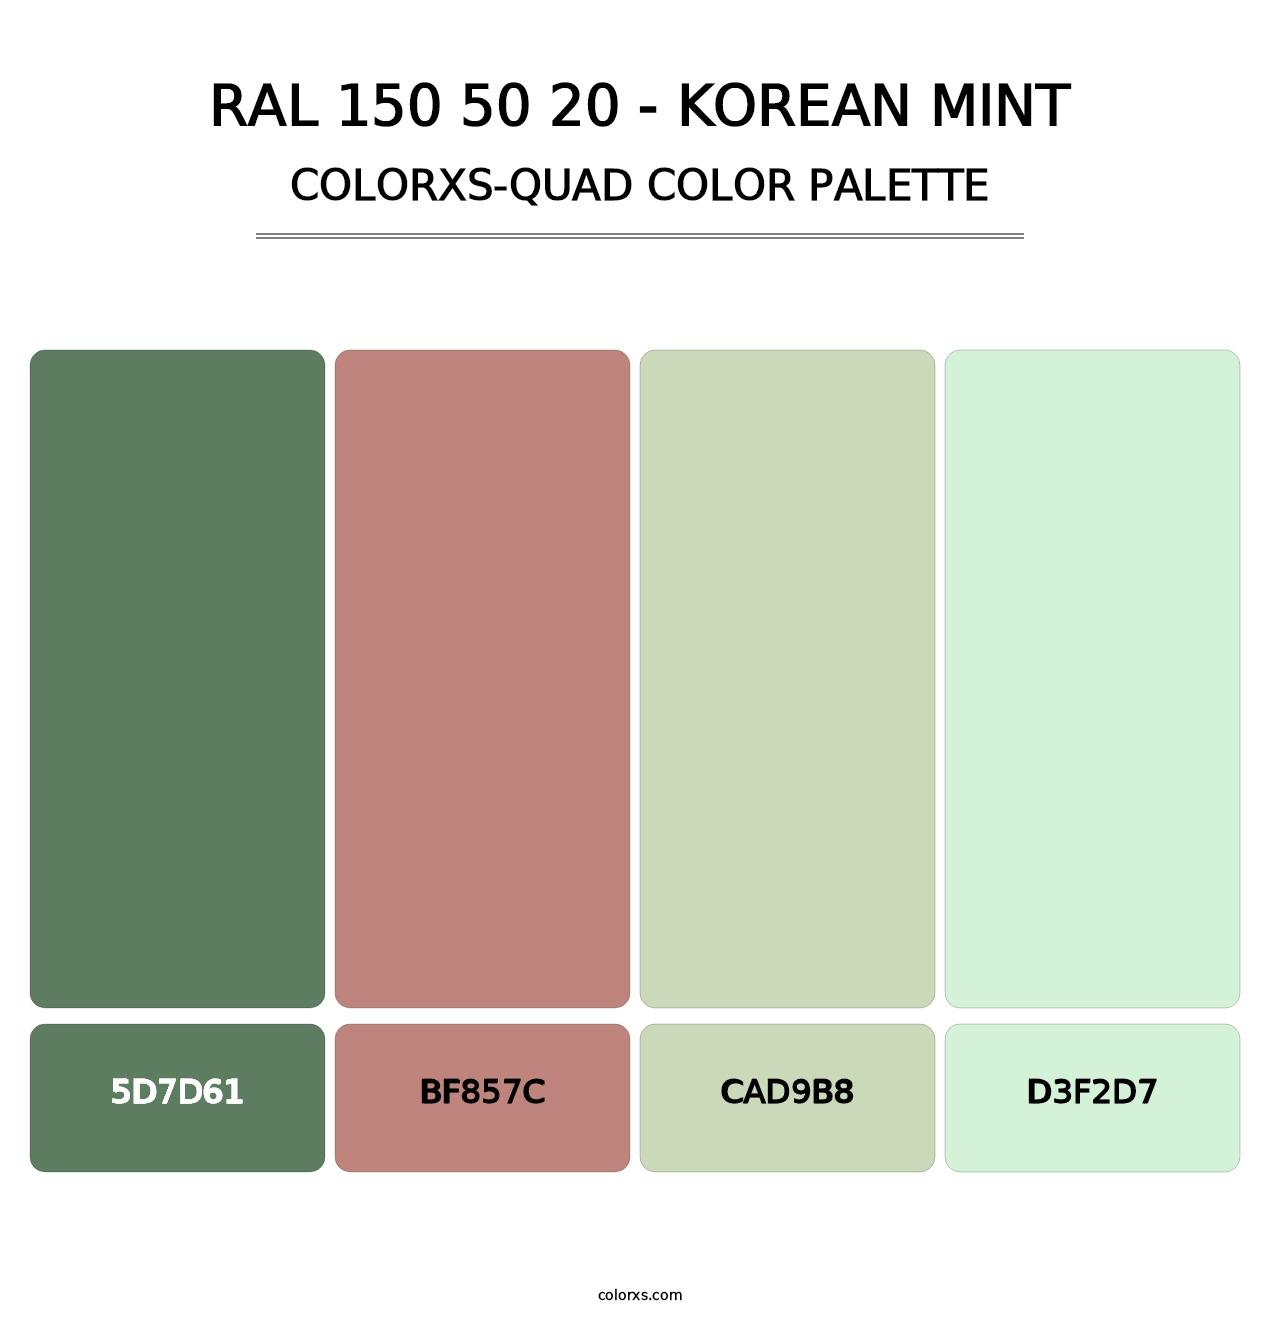 RAL 150 50 20 - Korean Mint - Colorxs Quad Palette